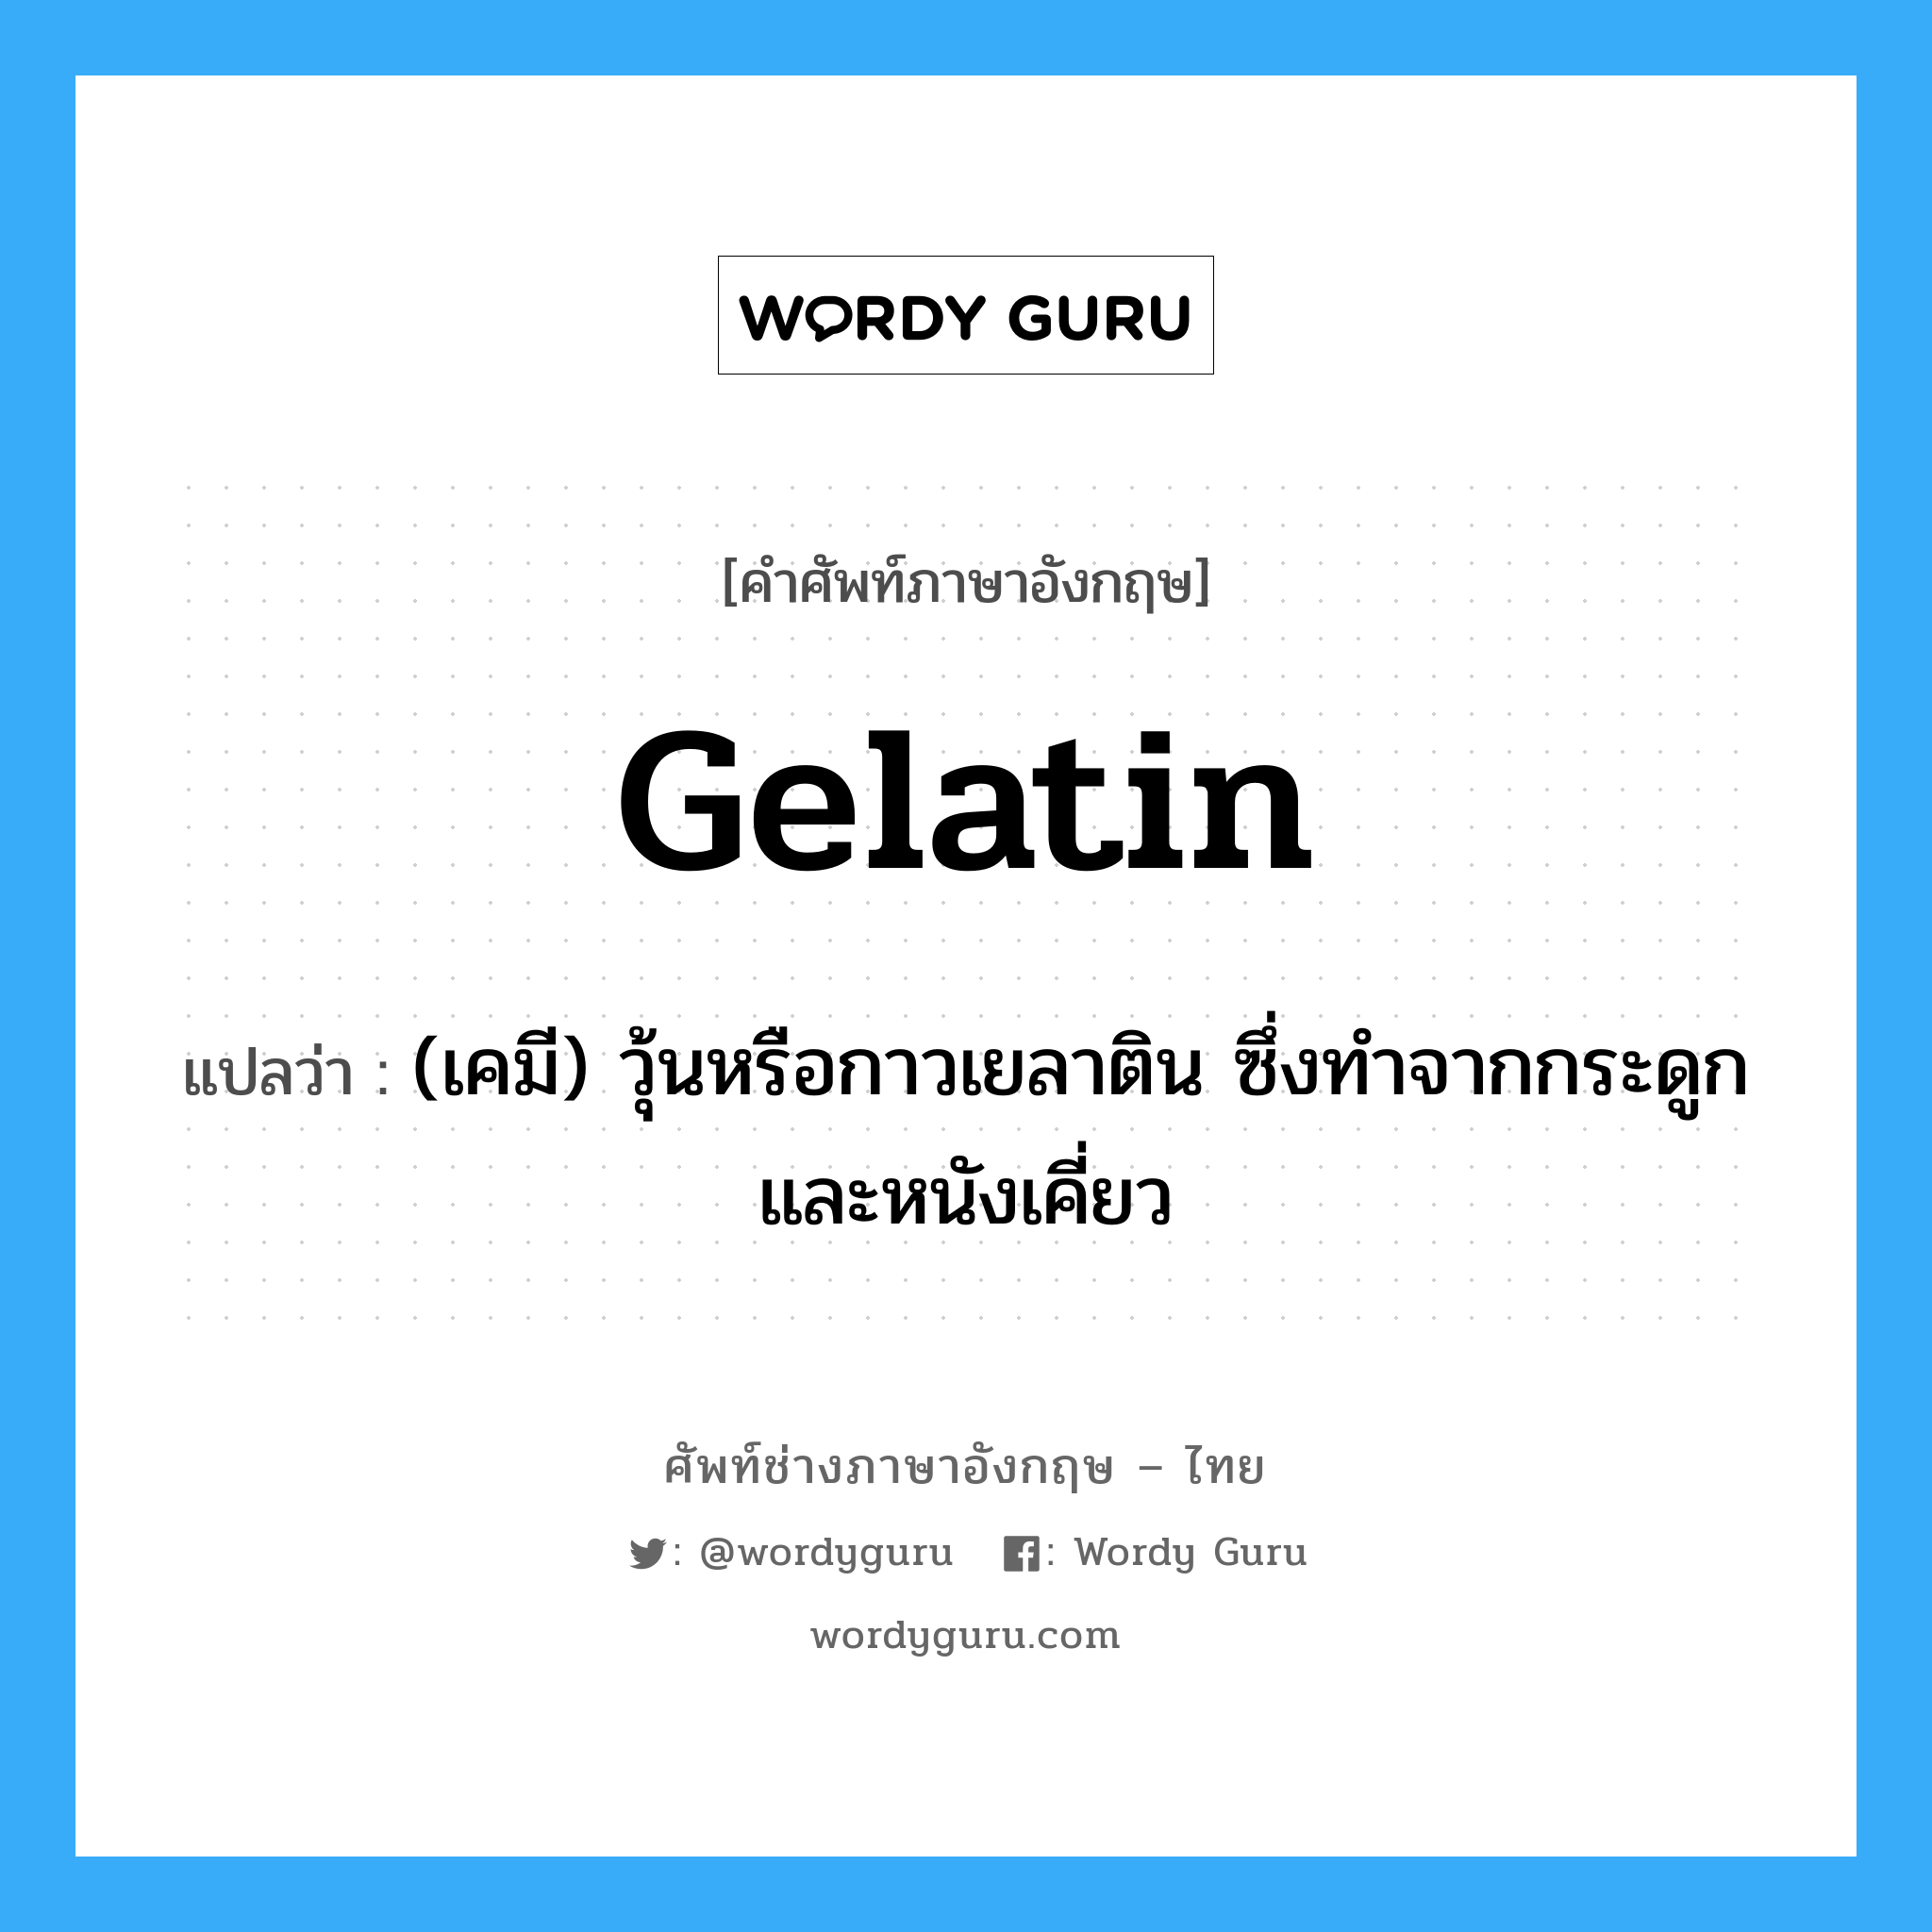 gelatin แปลว่า?, คำศัพท์ช่างภาษาอังกฤษ - ไทย gelatin คำศัพท์ภาษาอังกฤษ gelatin แปลว่า (เคมี) วุ้นหรือกาวเยลาติน ซึ่งทำจากกระดูกและหนังเคี่ยว